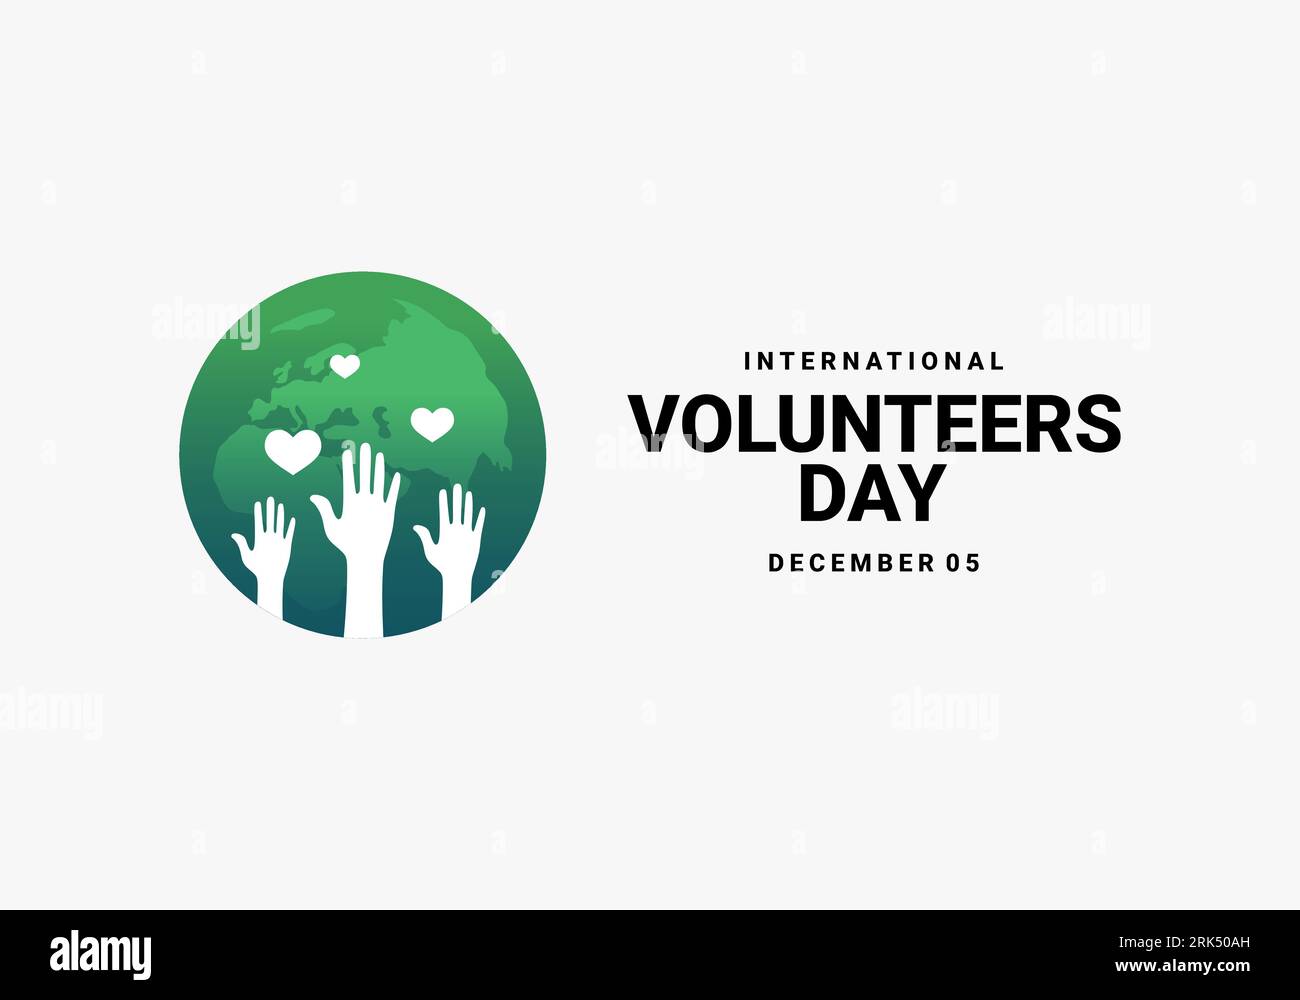 International Volunteers Day Background wurde am 5. dezember gefeiert. Stock Vektor